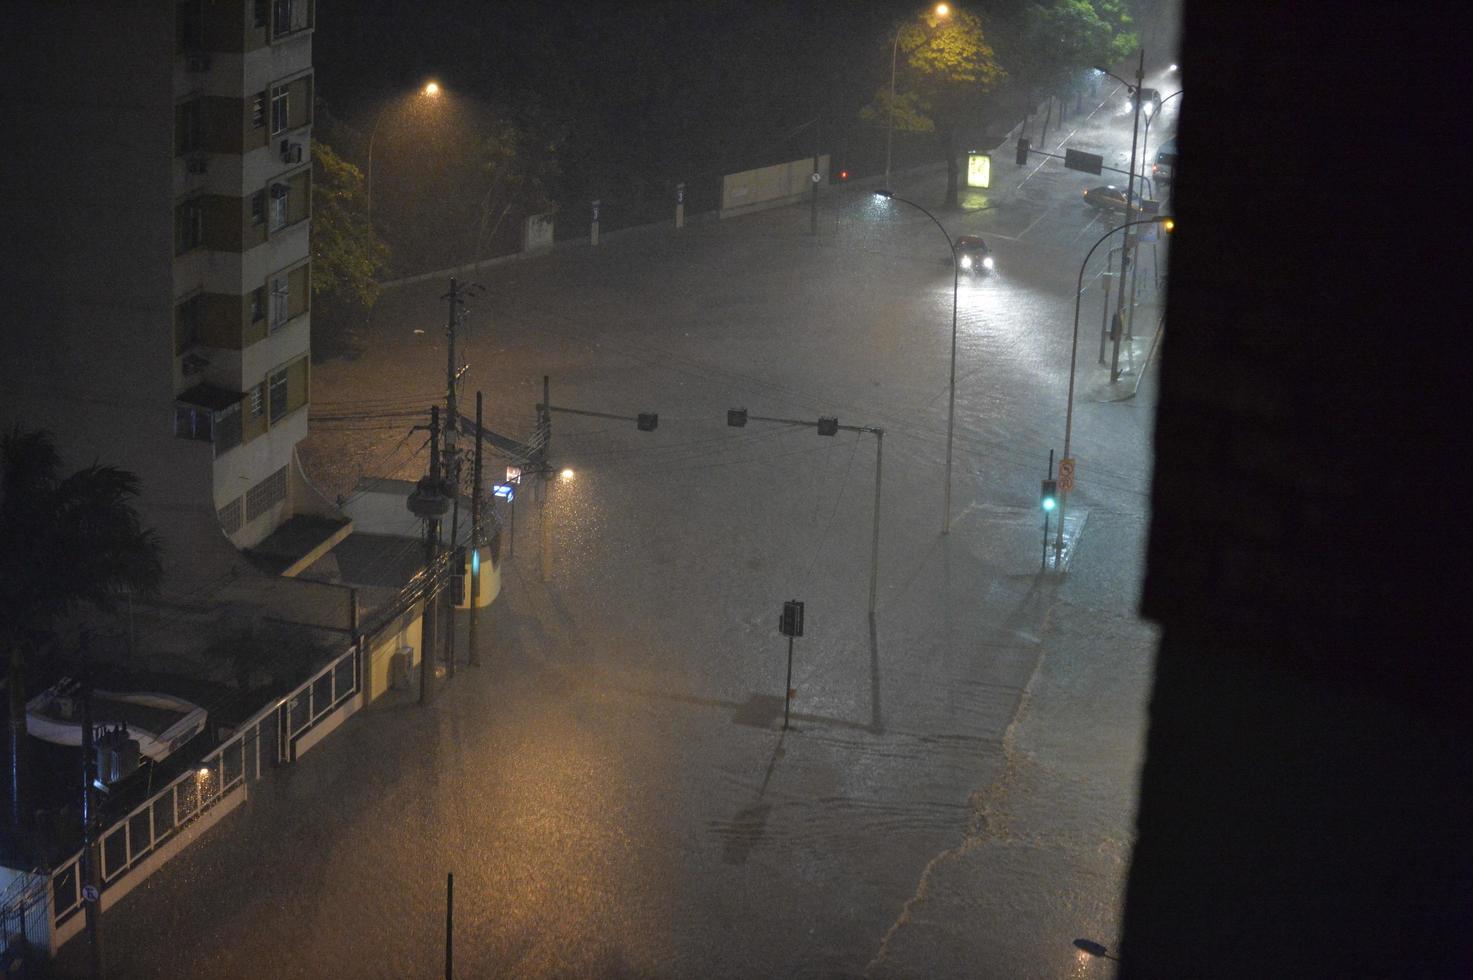 översvämning i de stad av rio de janeiro foto